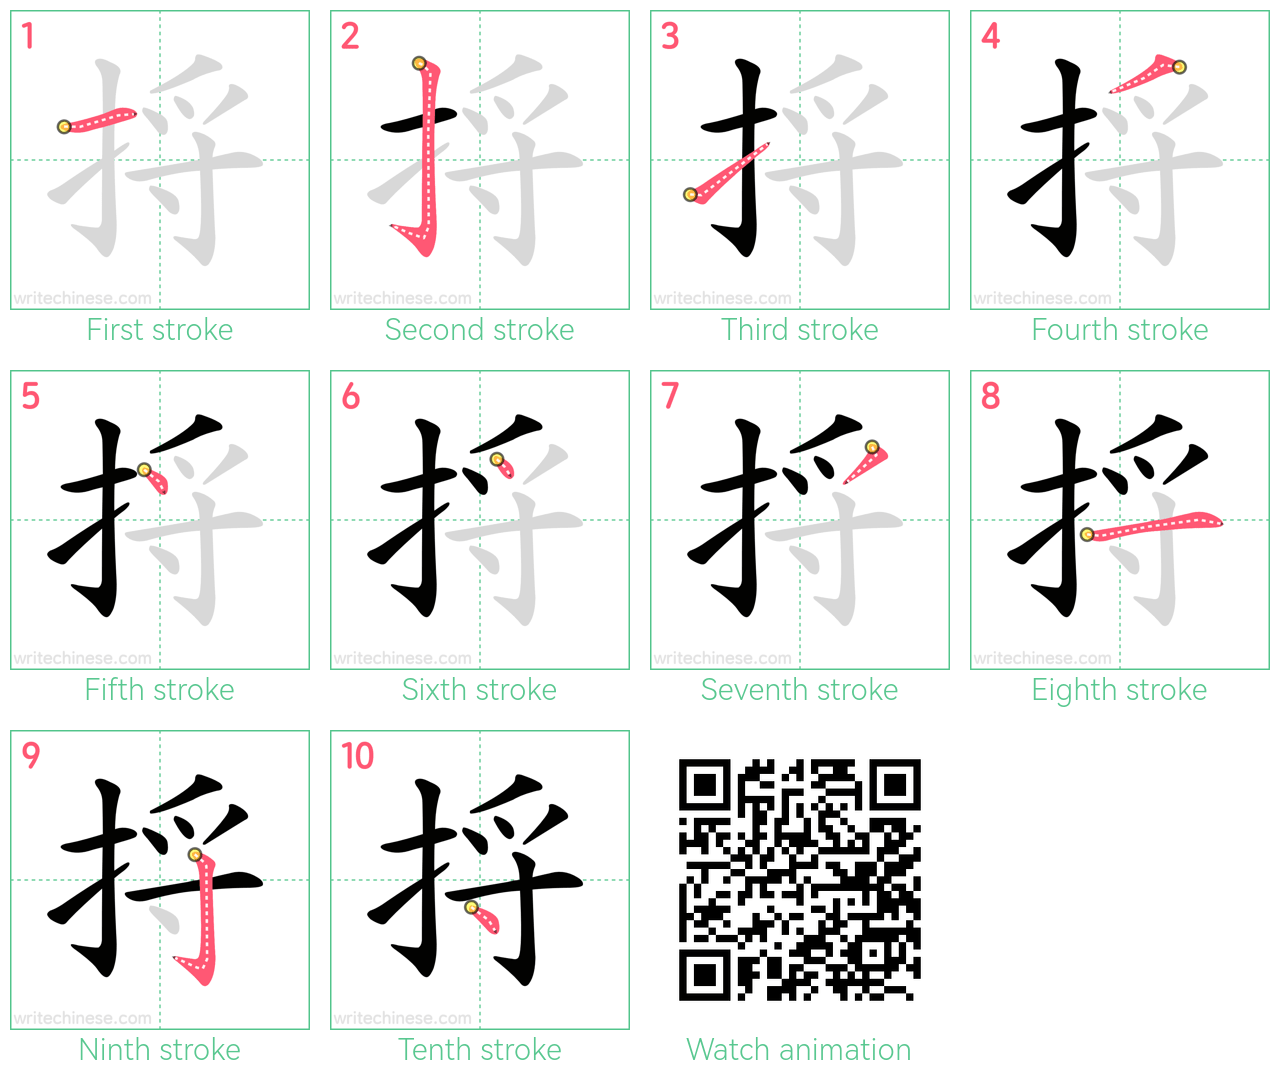 捋 step-by-step stroke order diagrams